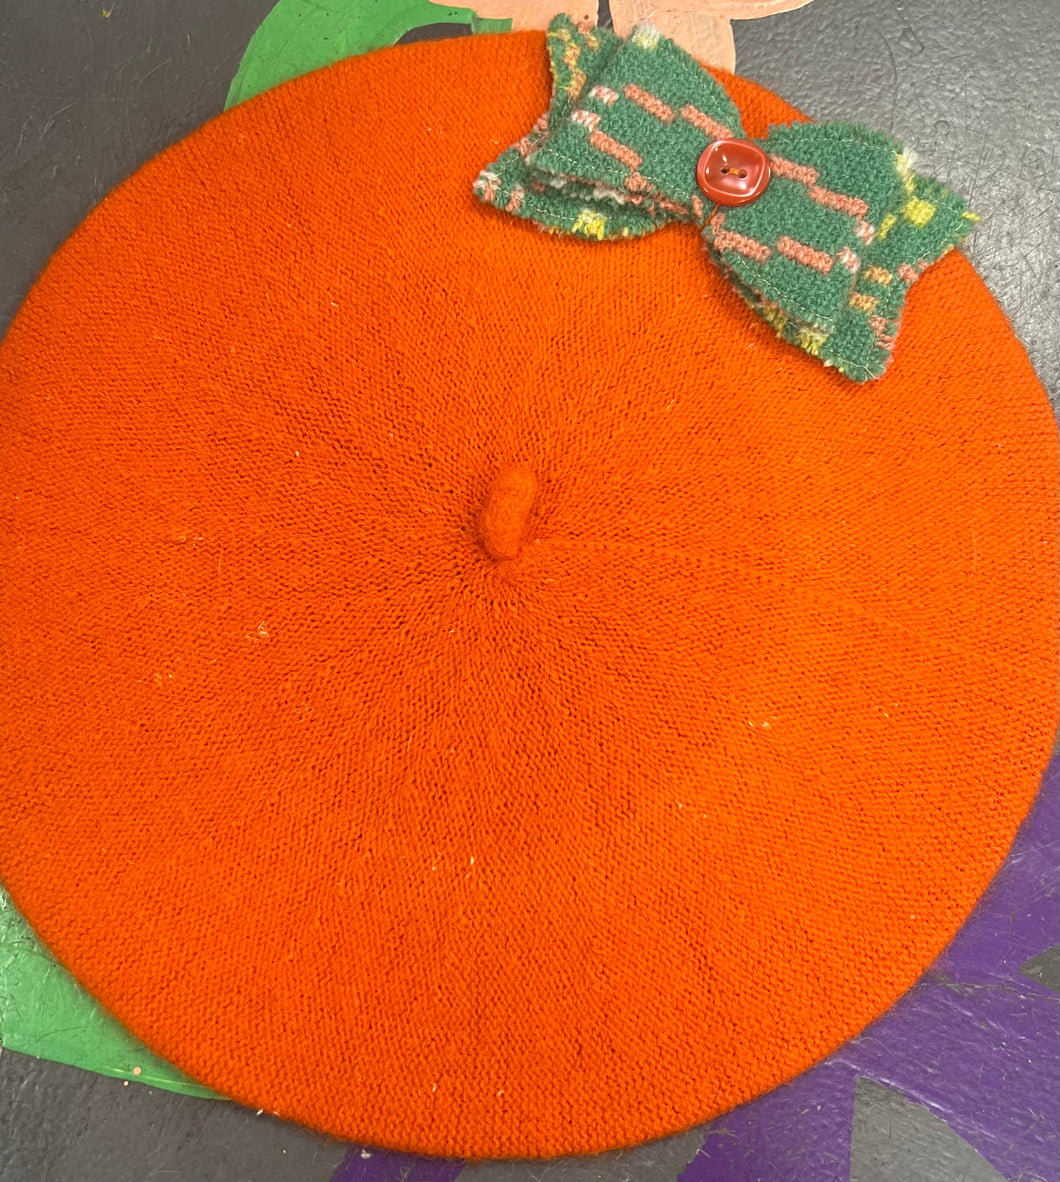 Beret oren efo bow brethyn Cymreig gwyrdd / Orange beret with green Welsh tapestry bow